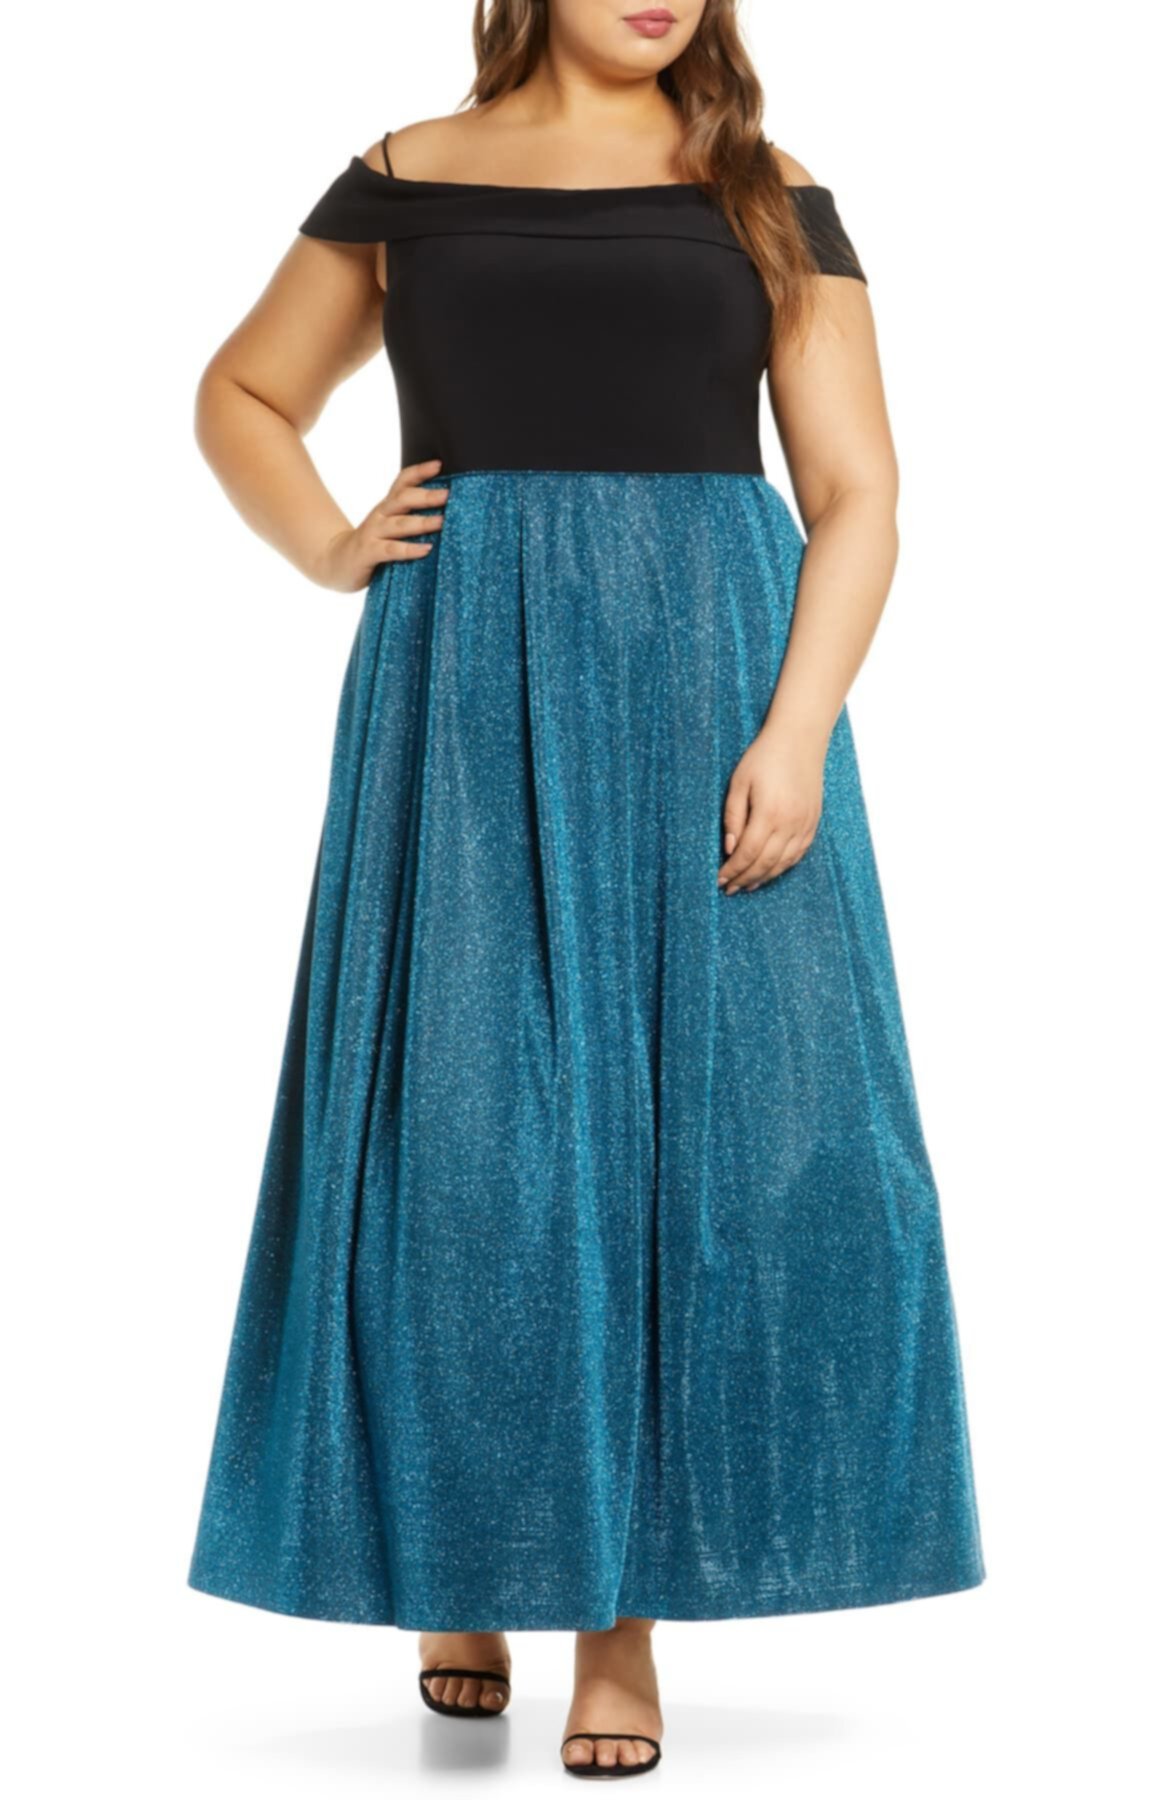 Хлопковое платье с открытыми плечами Shimmer (плюс размер) Morgan & Co.